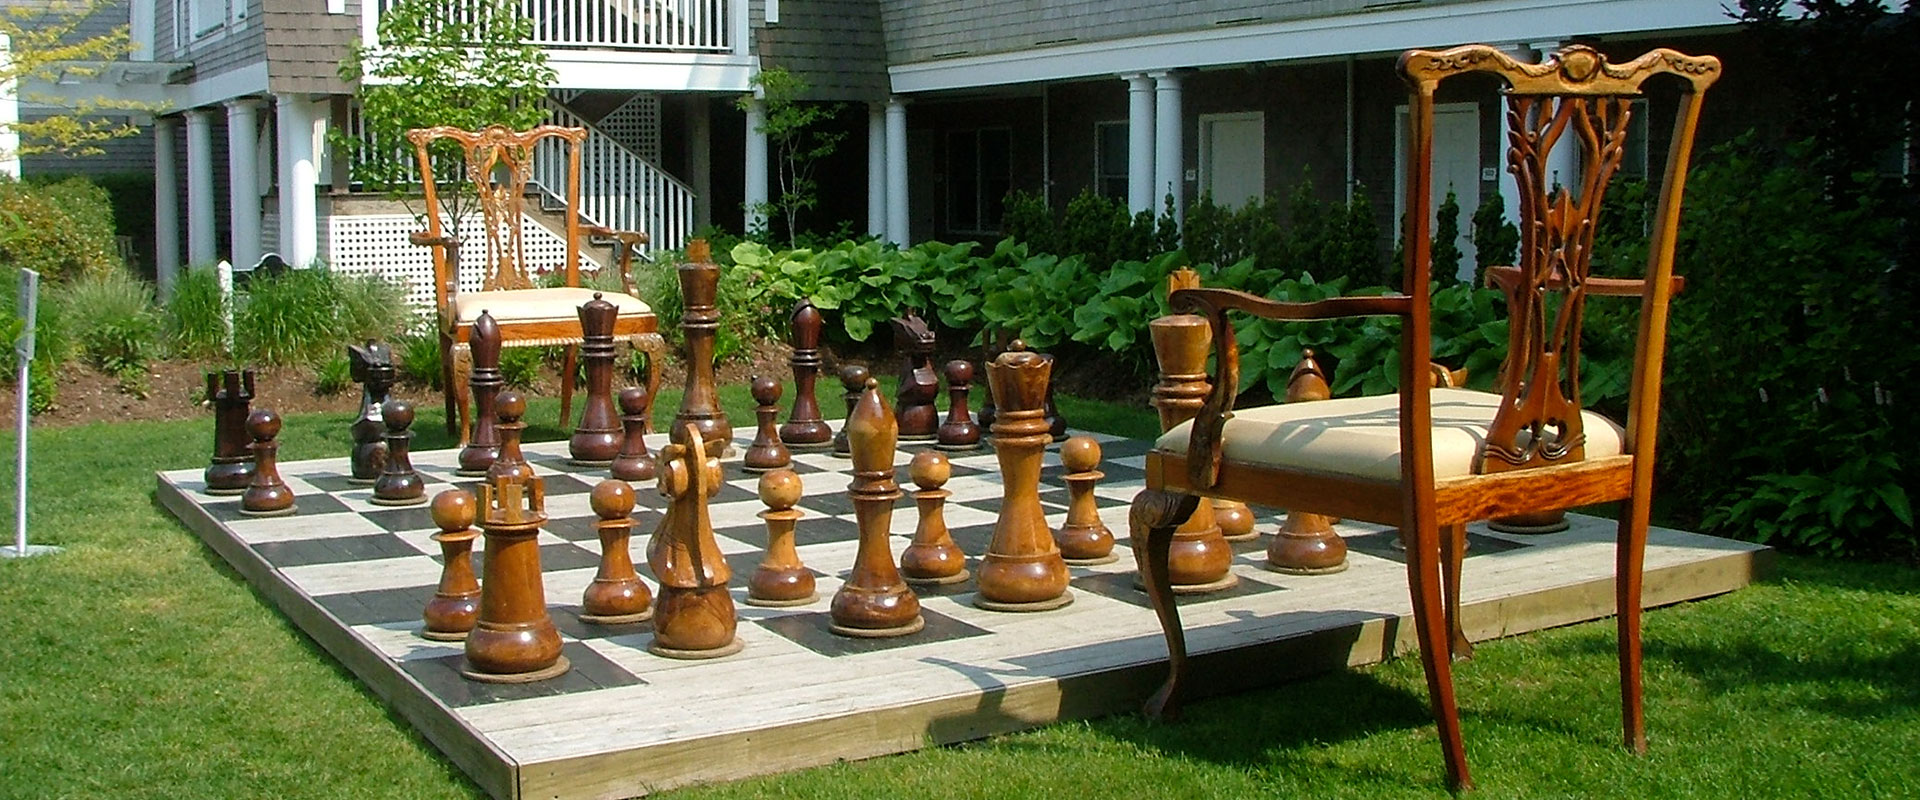 wielkie szachy